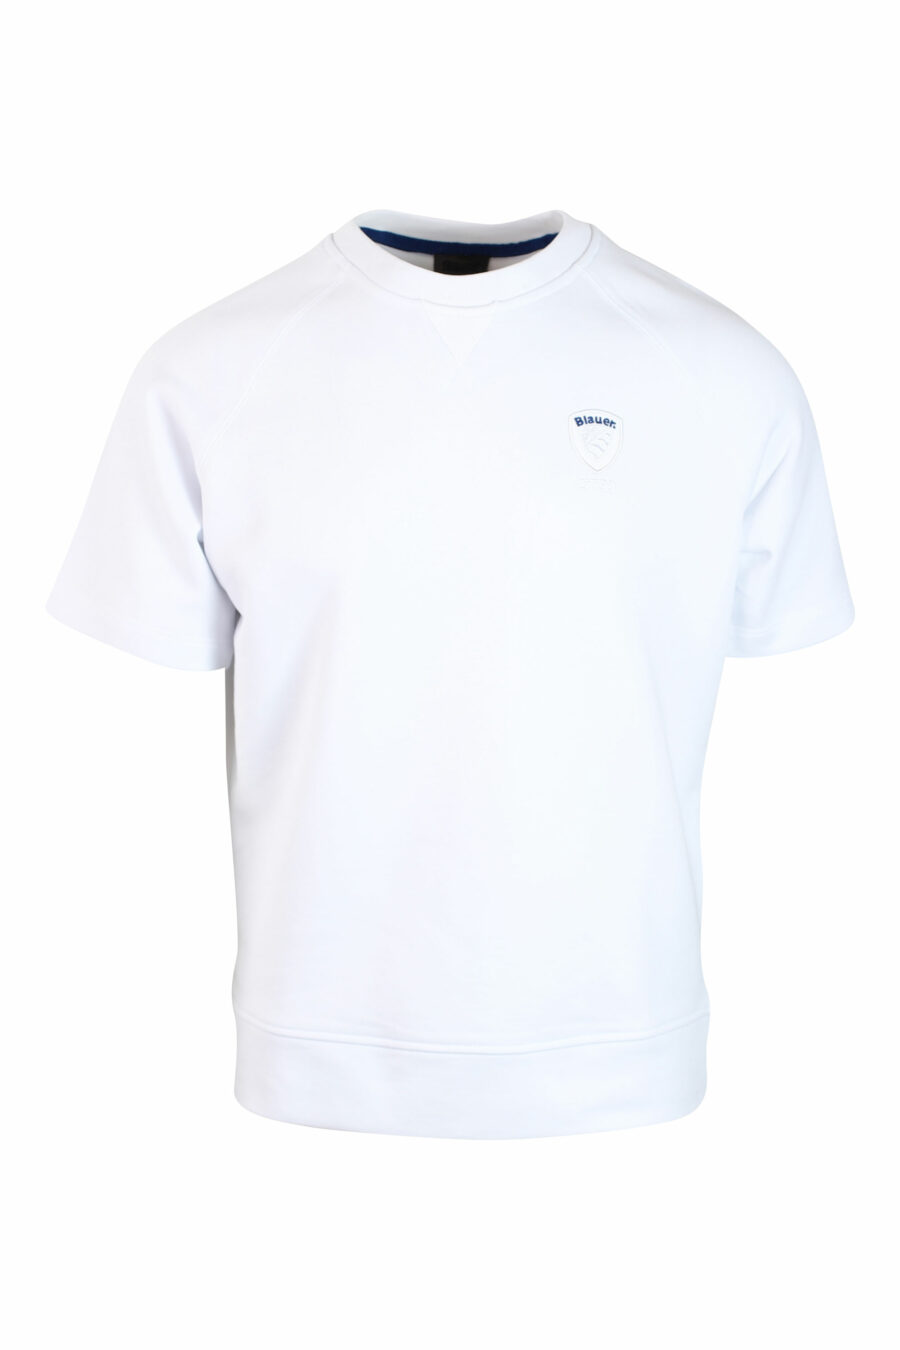 Weißes T-Shirt mit aufgesticktem monochromen Mini-Logo - IMG 0125